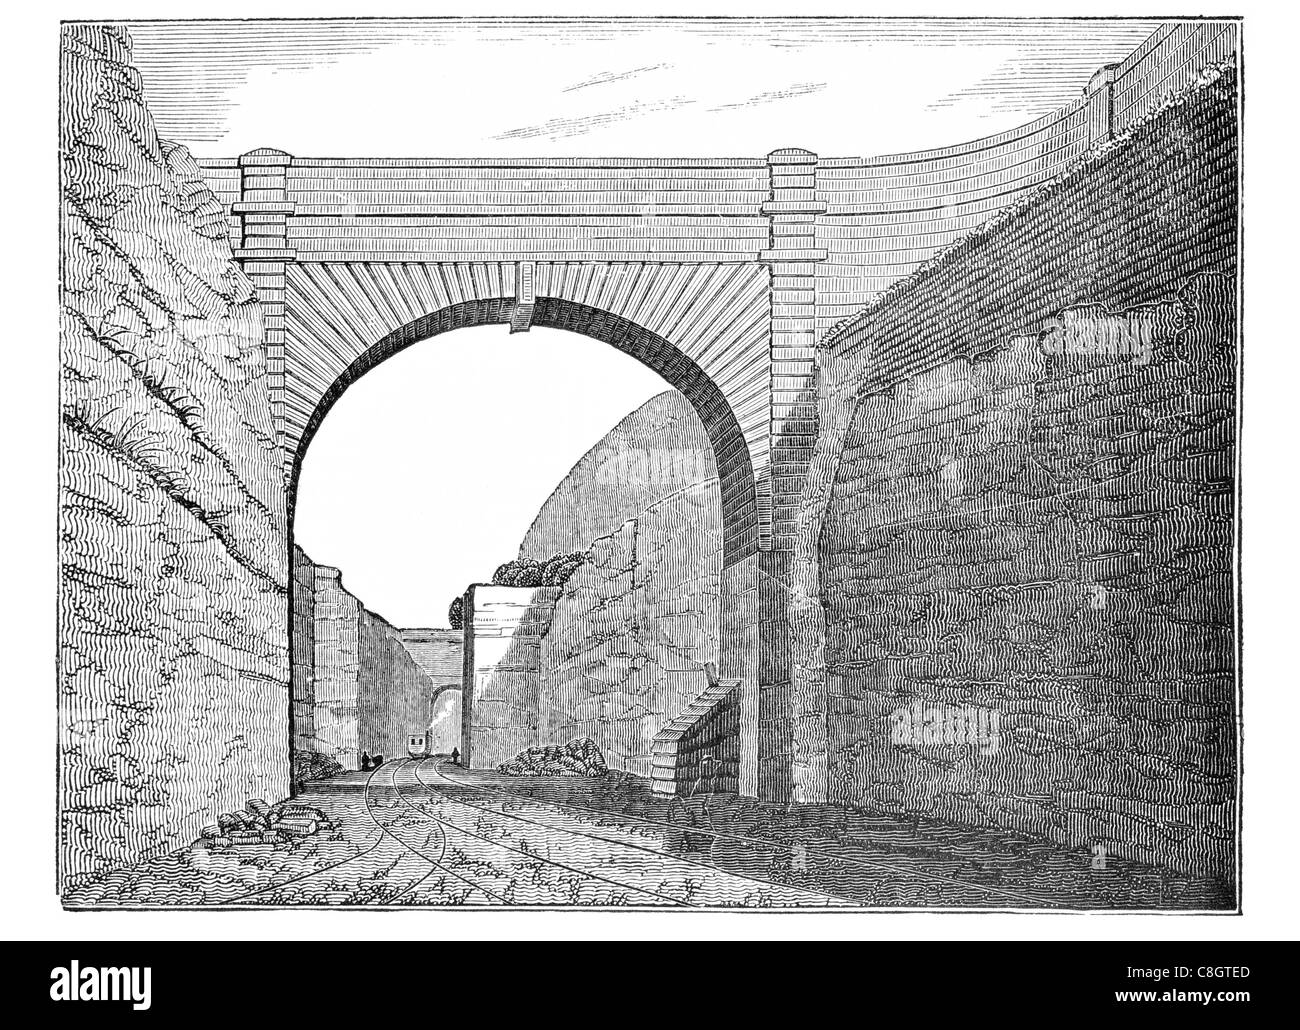 Montaggio di oliva il taglio di Liverpool e Manchester ferroviaria locomotiva a vapore costruzione scavo ponte scavato arch Foto Stock